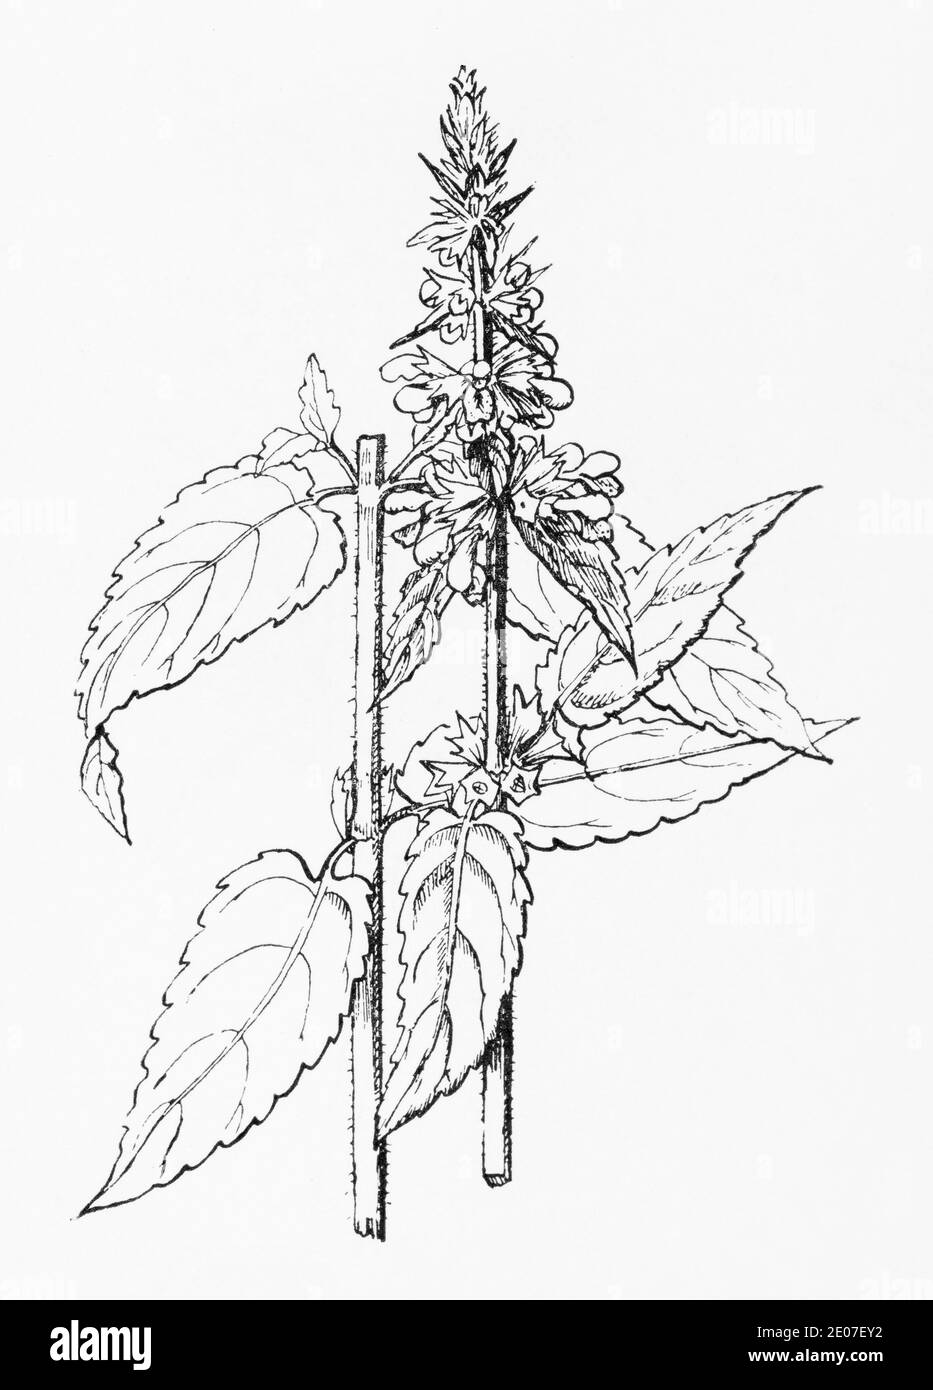 Alte botanische Illustration Gravur von Hybrid Woundwort / Stachys ambigua. Siehe Hinweise Stockfoto